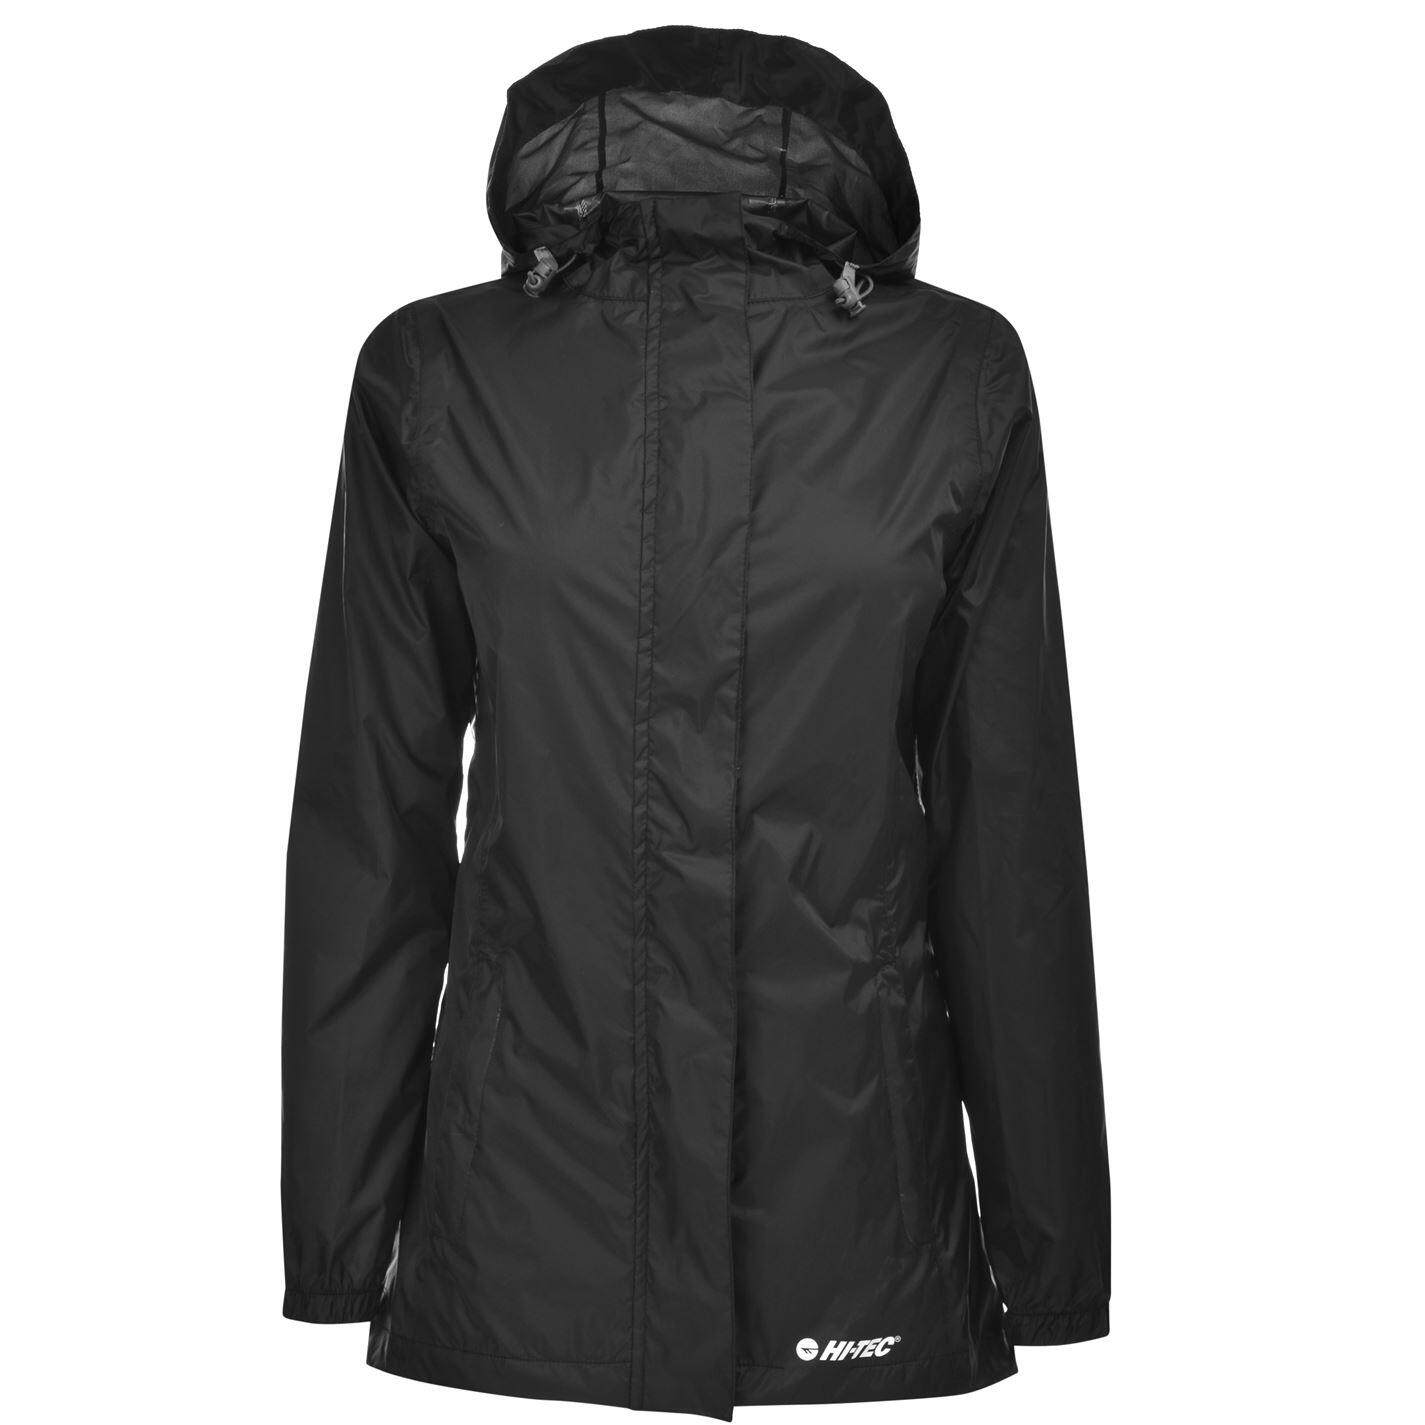 Gelert Womens Packaway Waterproof Jacket Coat Top Breathable Clothing ...